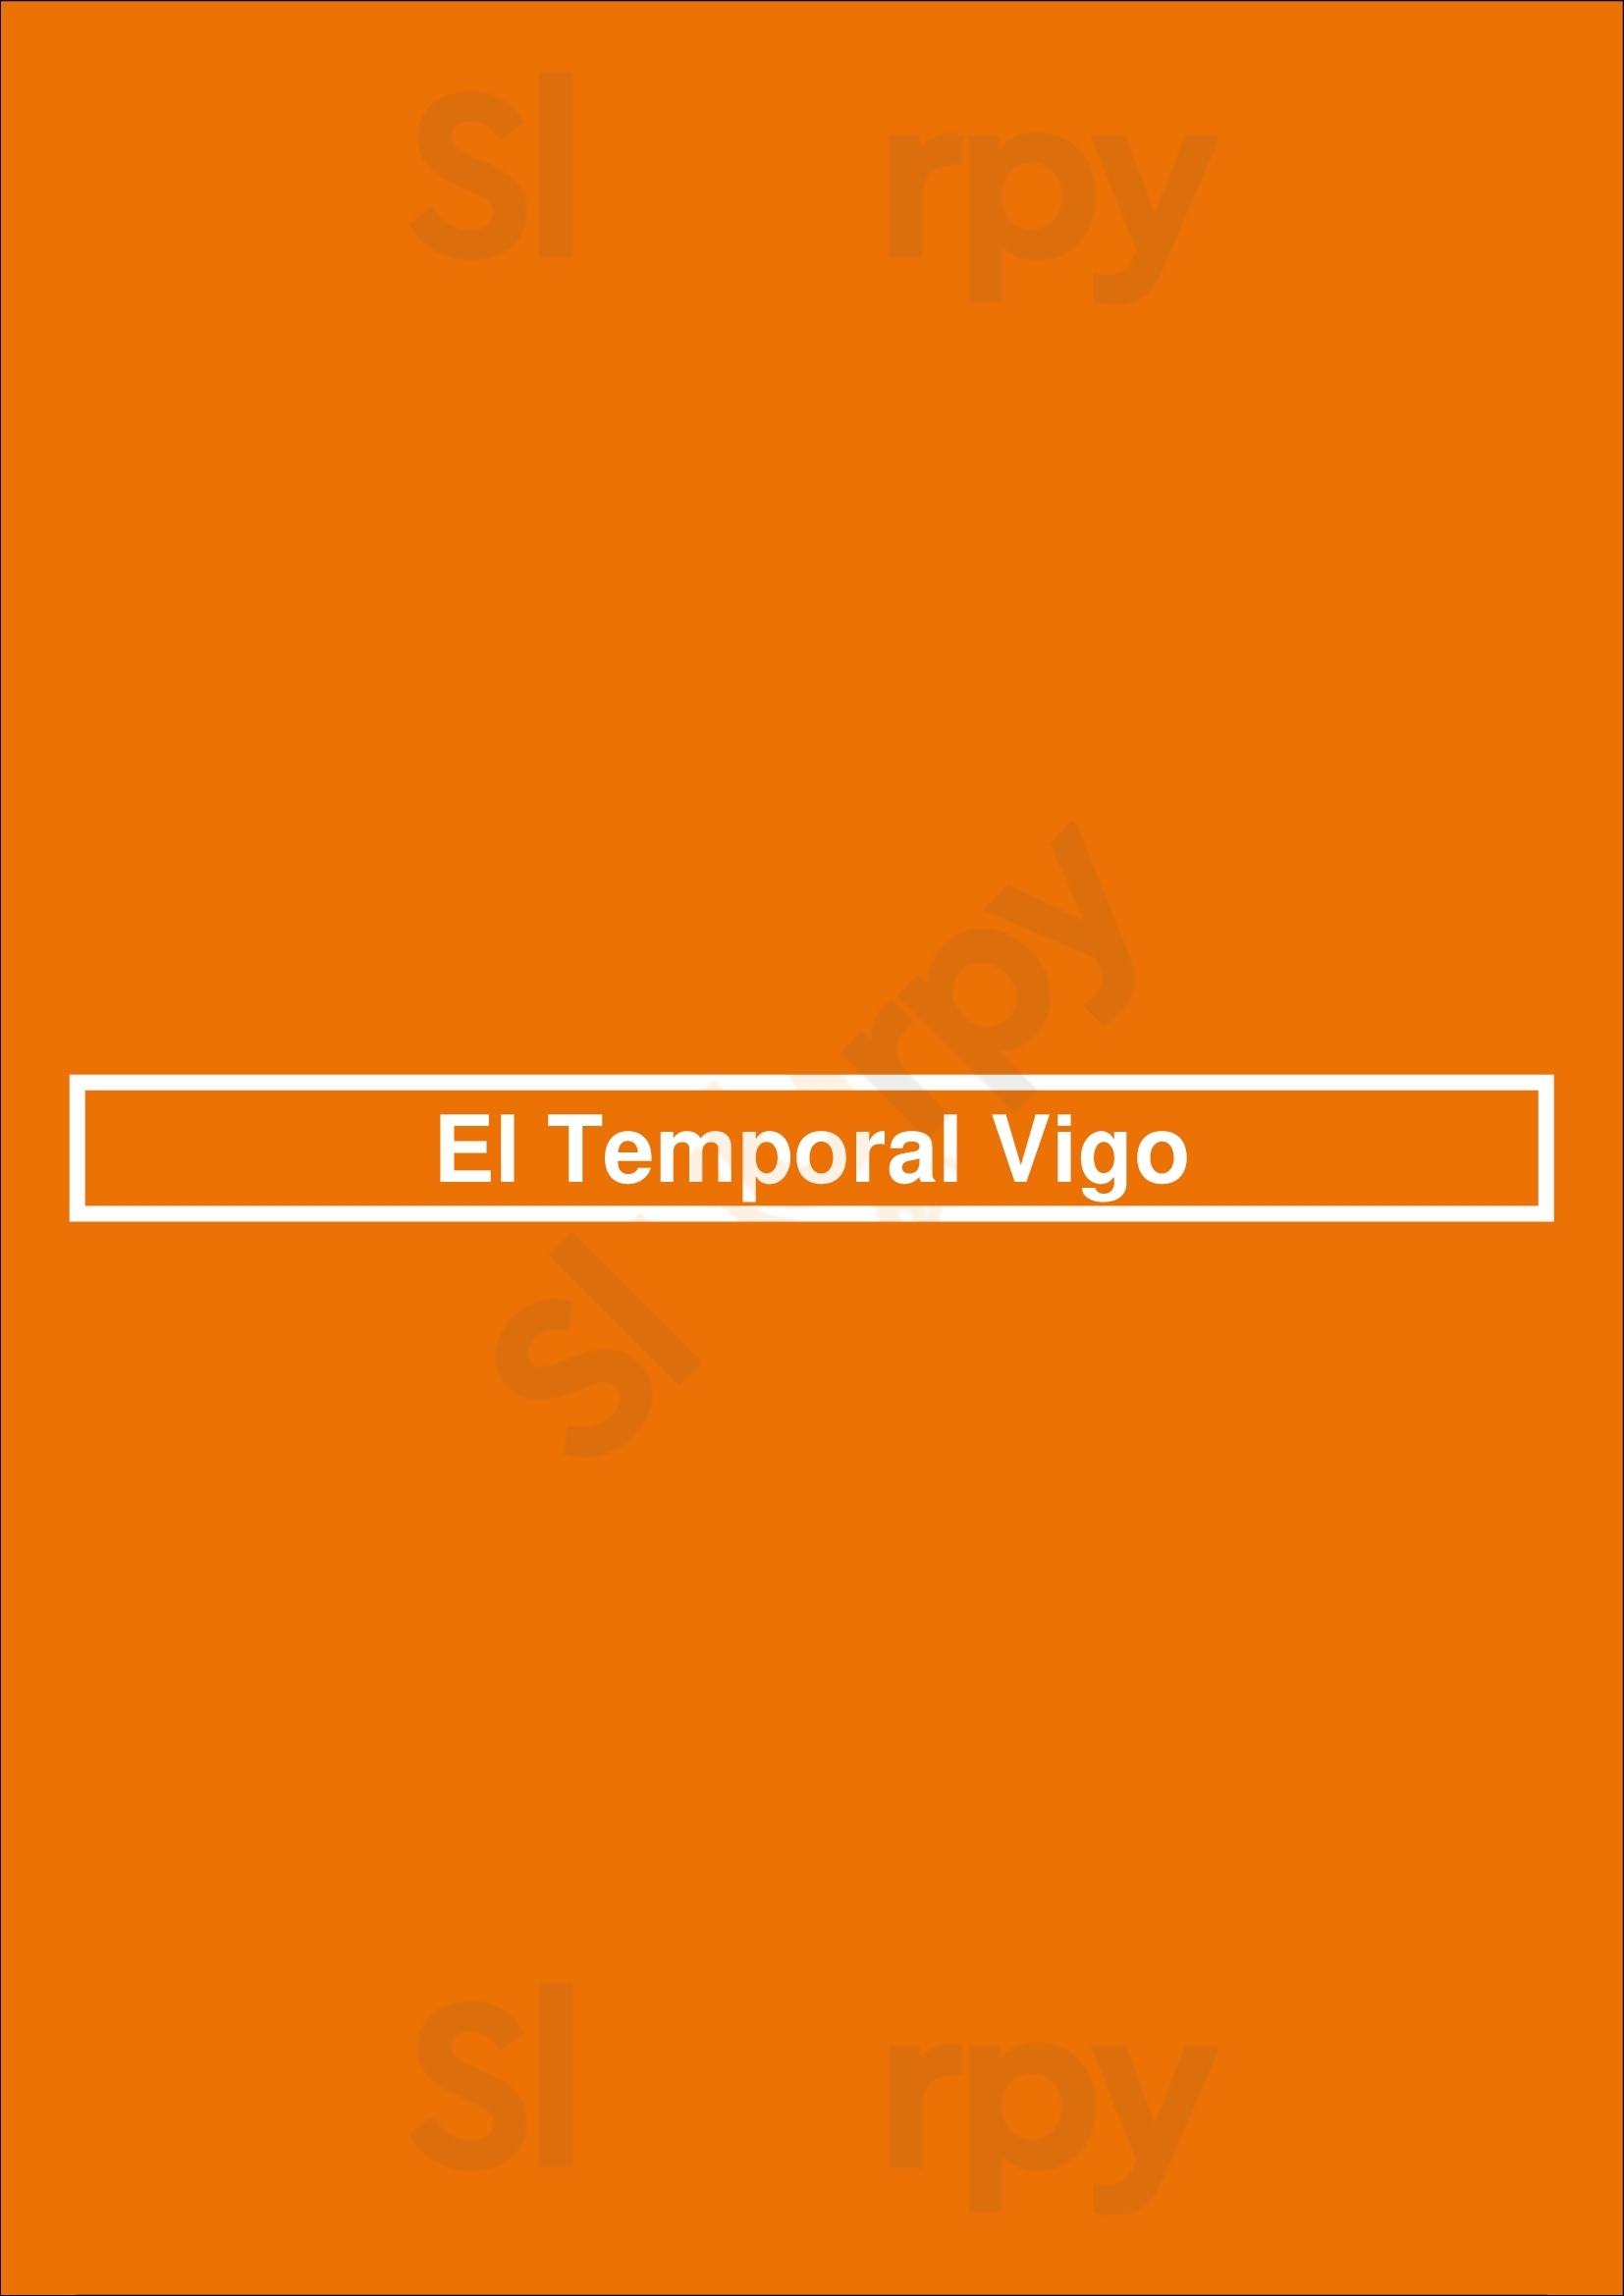 El Temporal Vigo Vigo Menu - 1